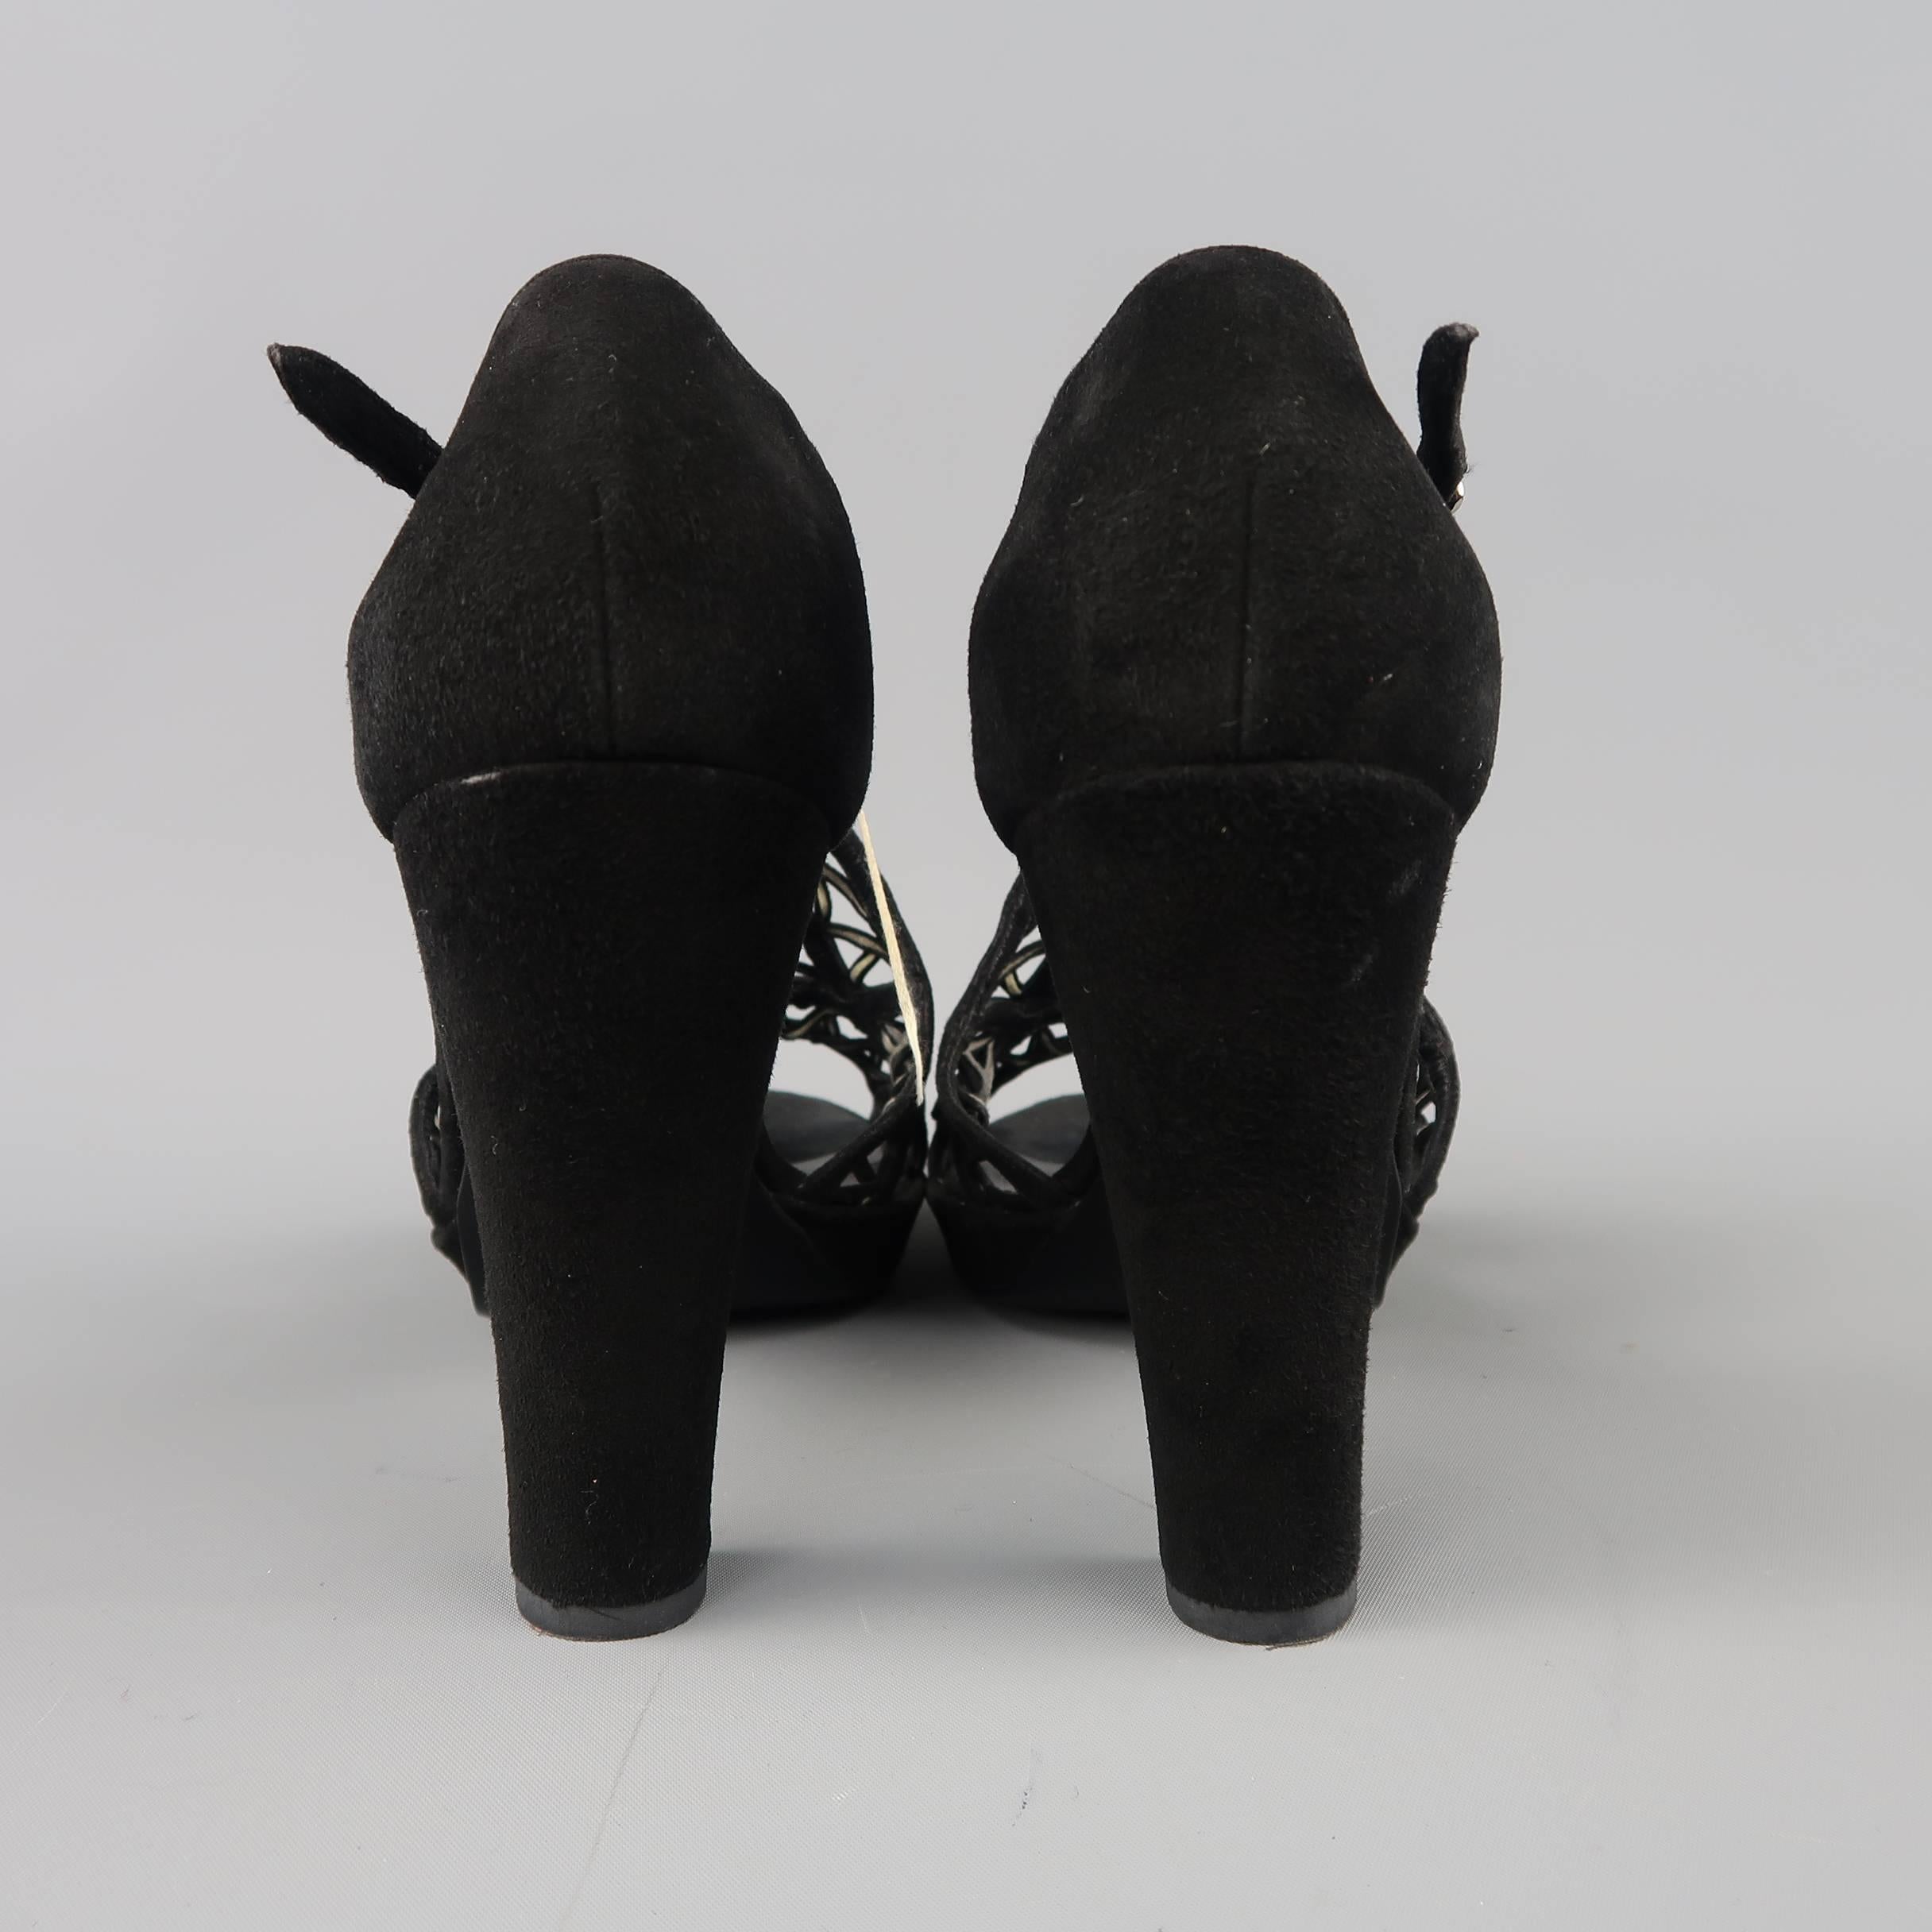 HERMES Size 10 Black Suede Buckled Strap Platform Sandals 3